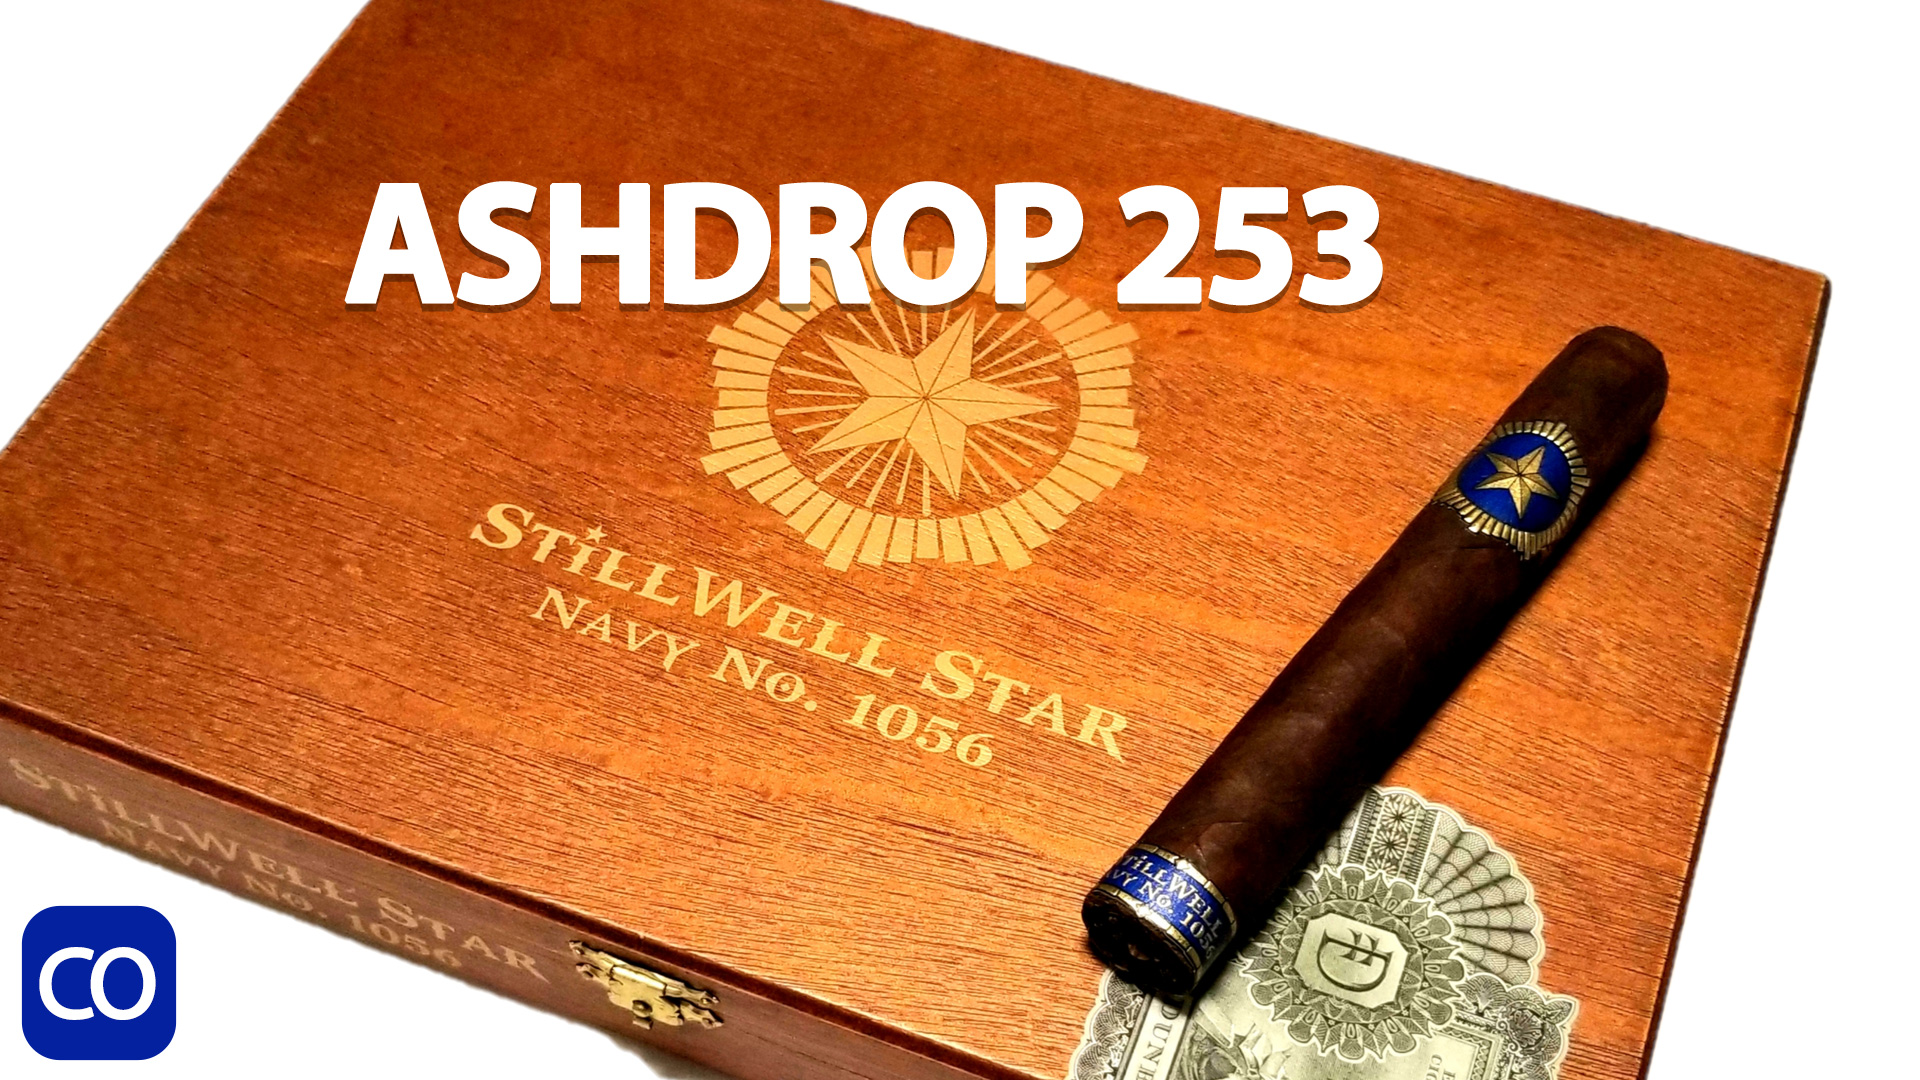 CigarAndPipes CO Ashdrop 253